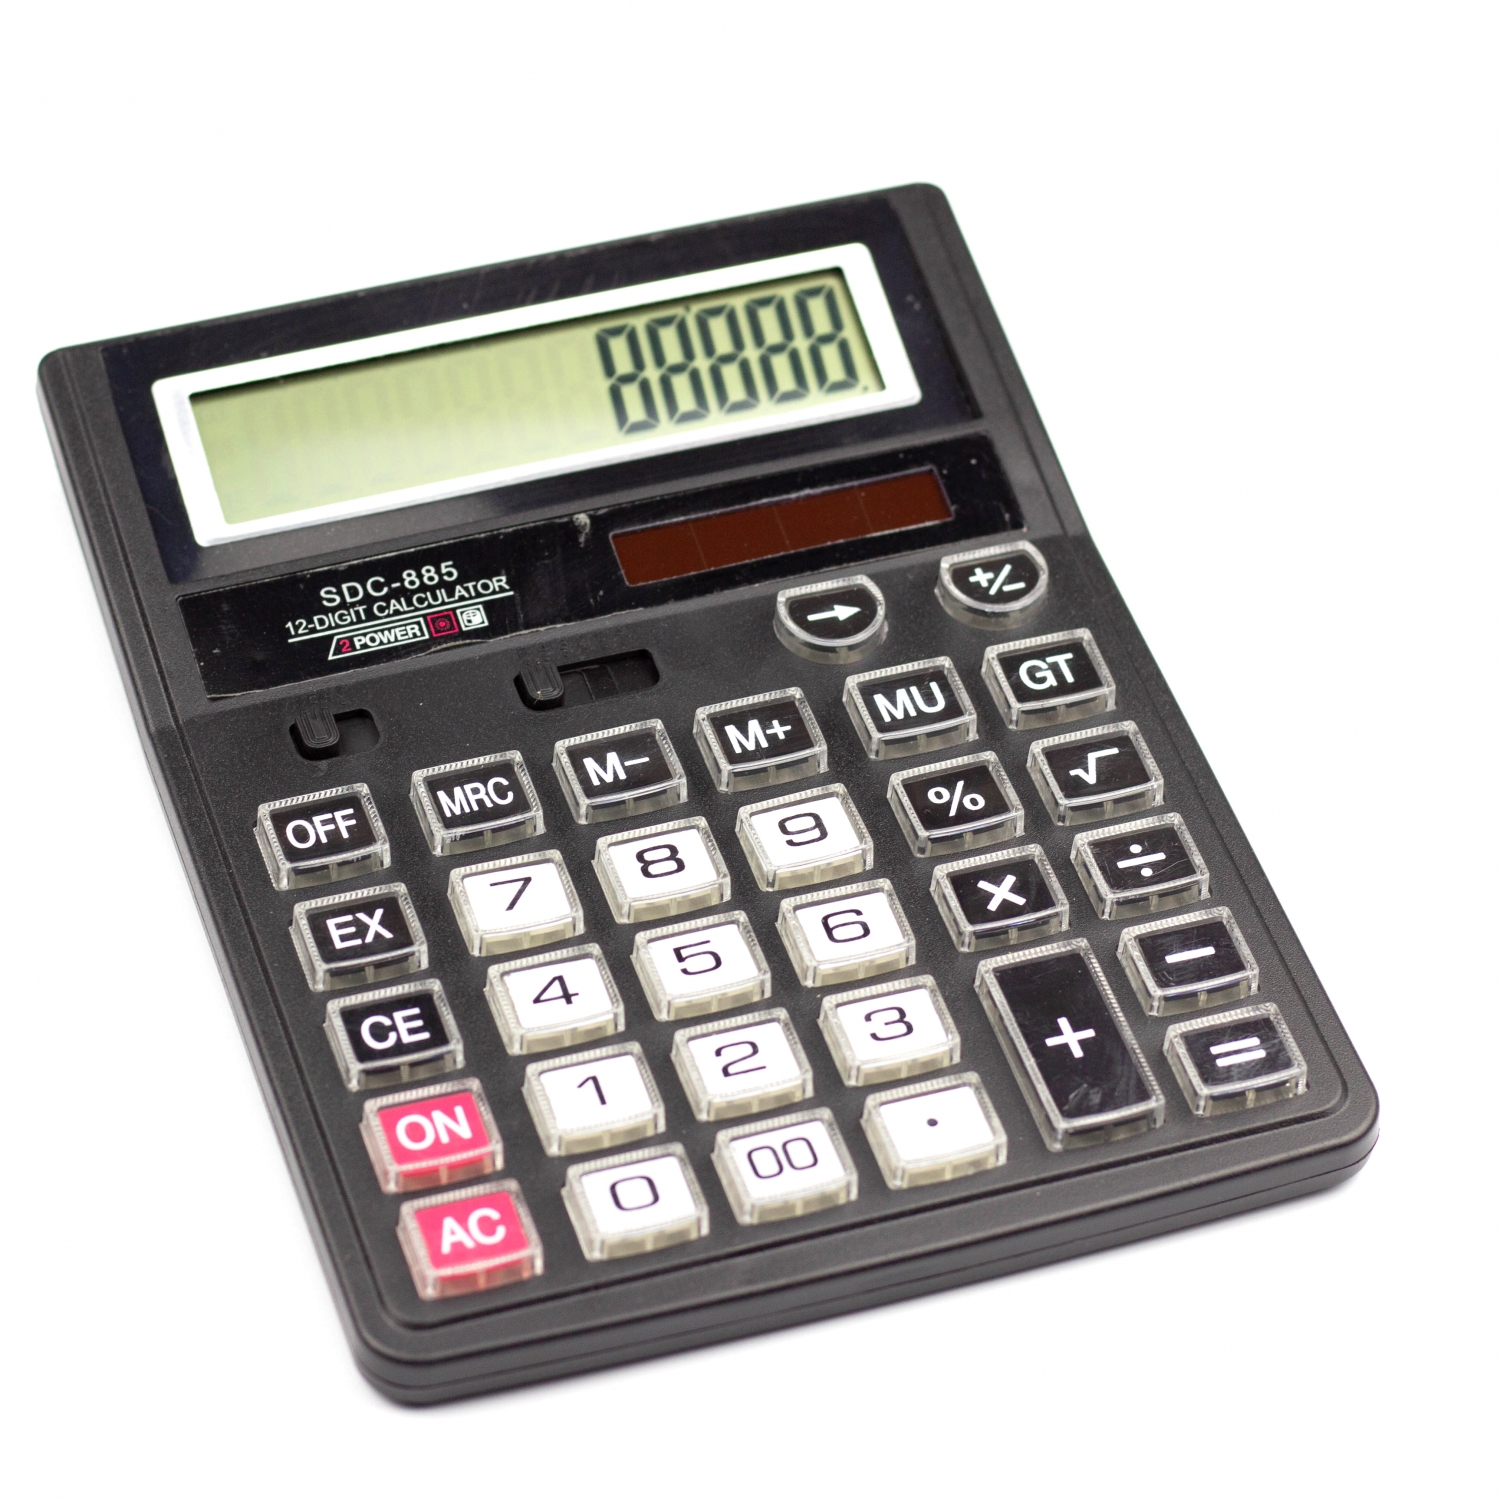 Калькулятор SDC-885 в коробке 12 разрядный AL6350 - Елабуга 